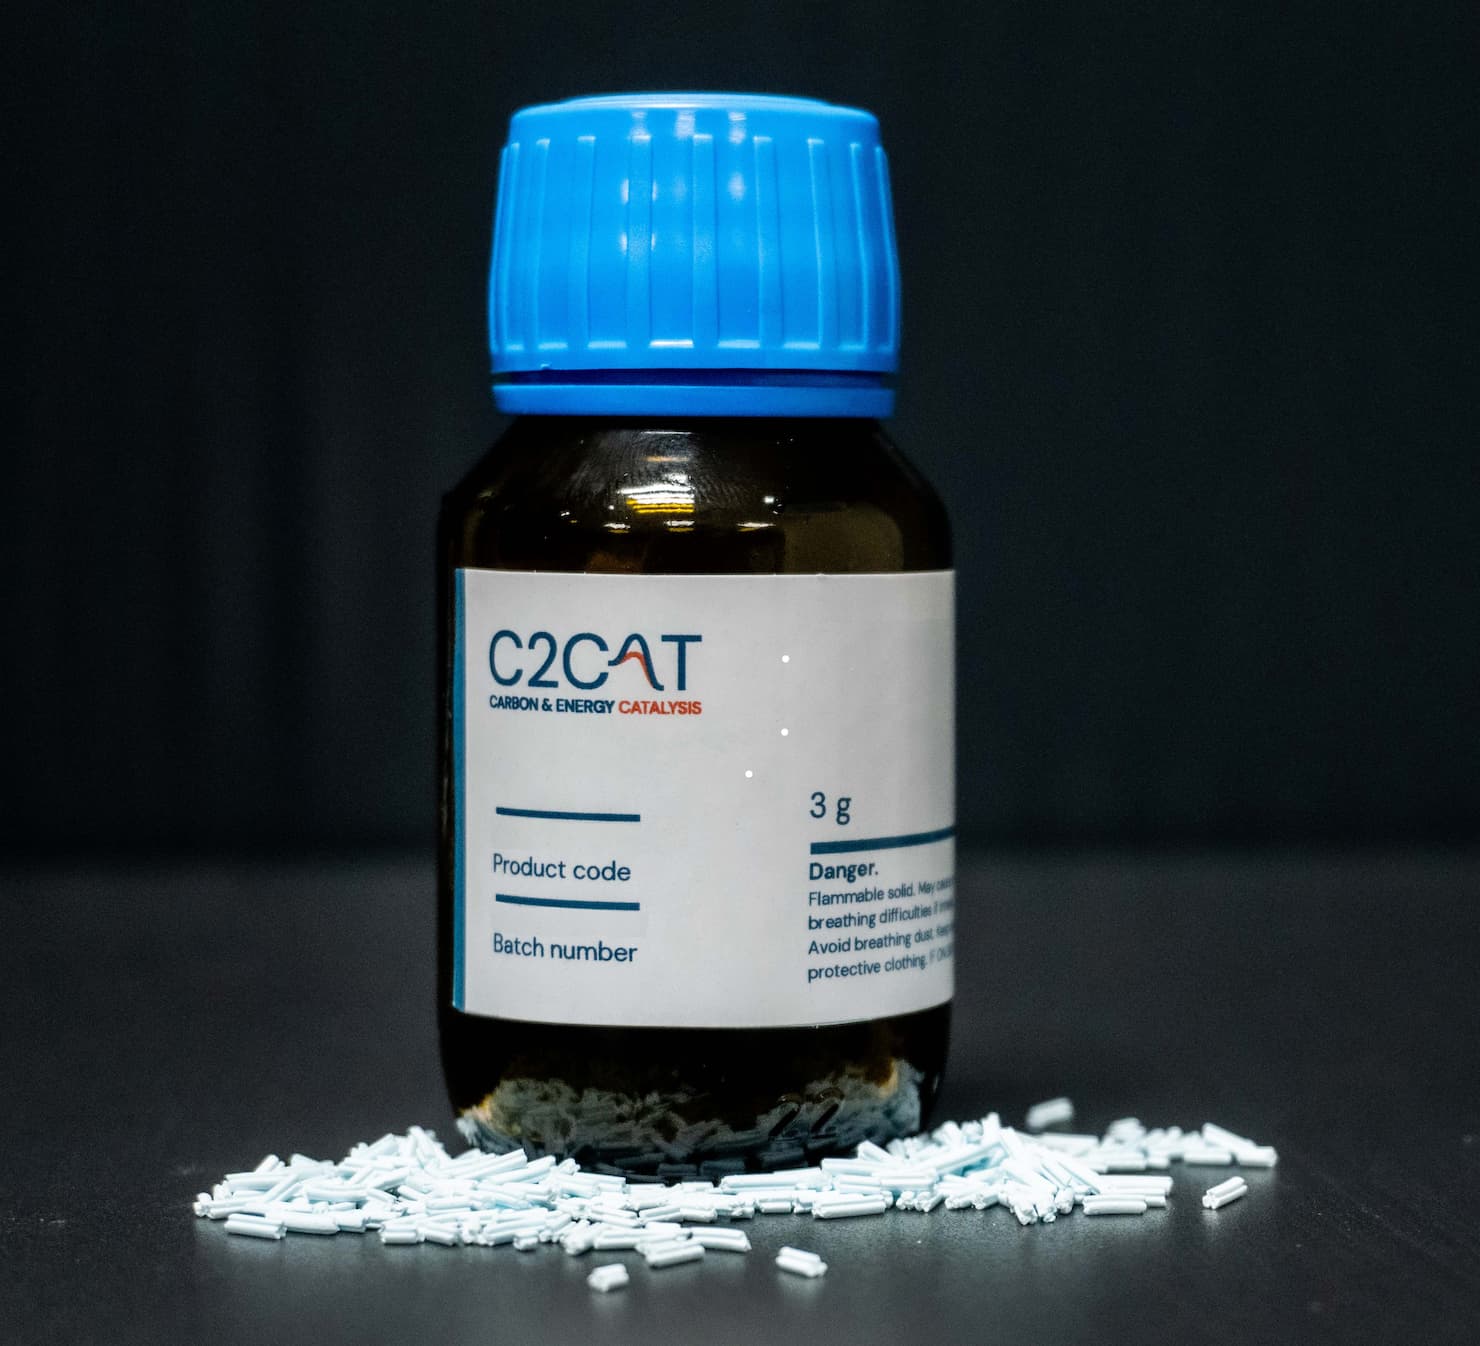 C2CAT catalyst product